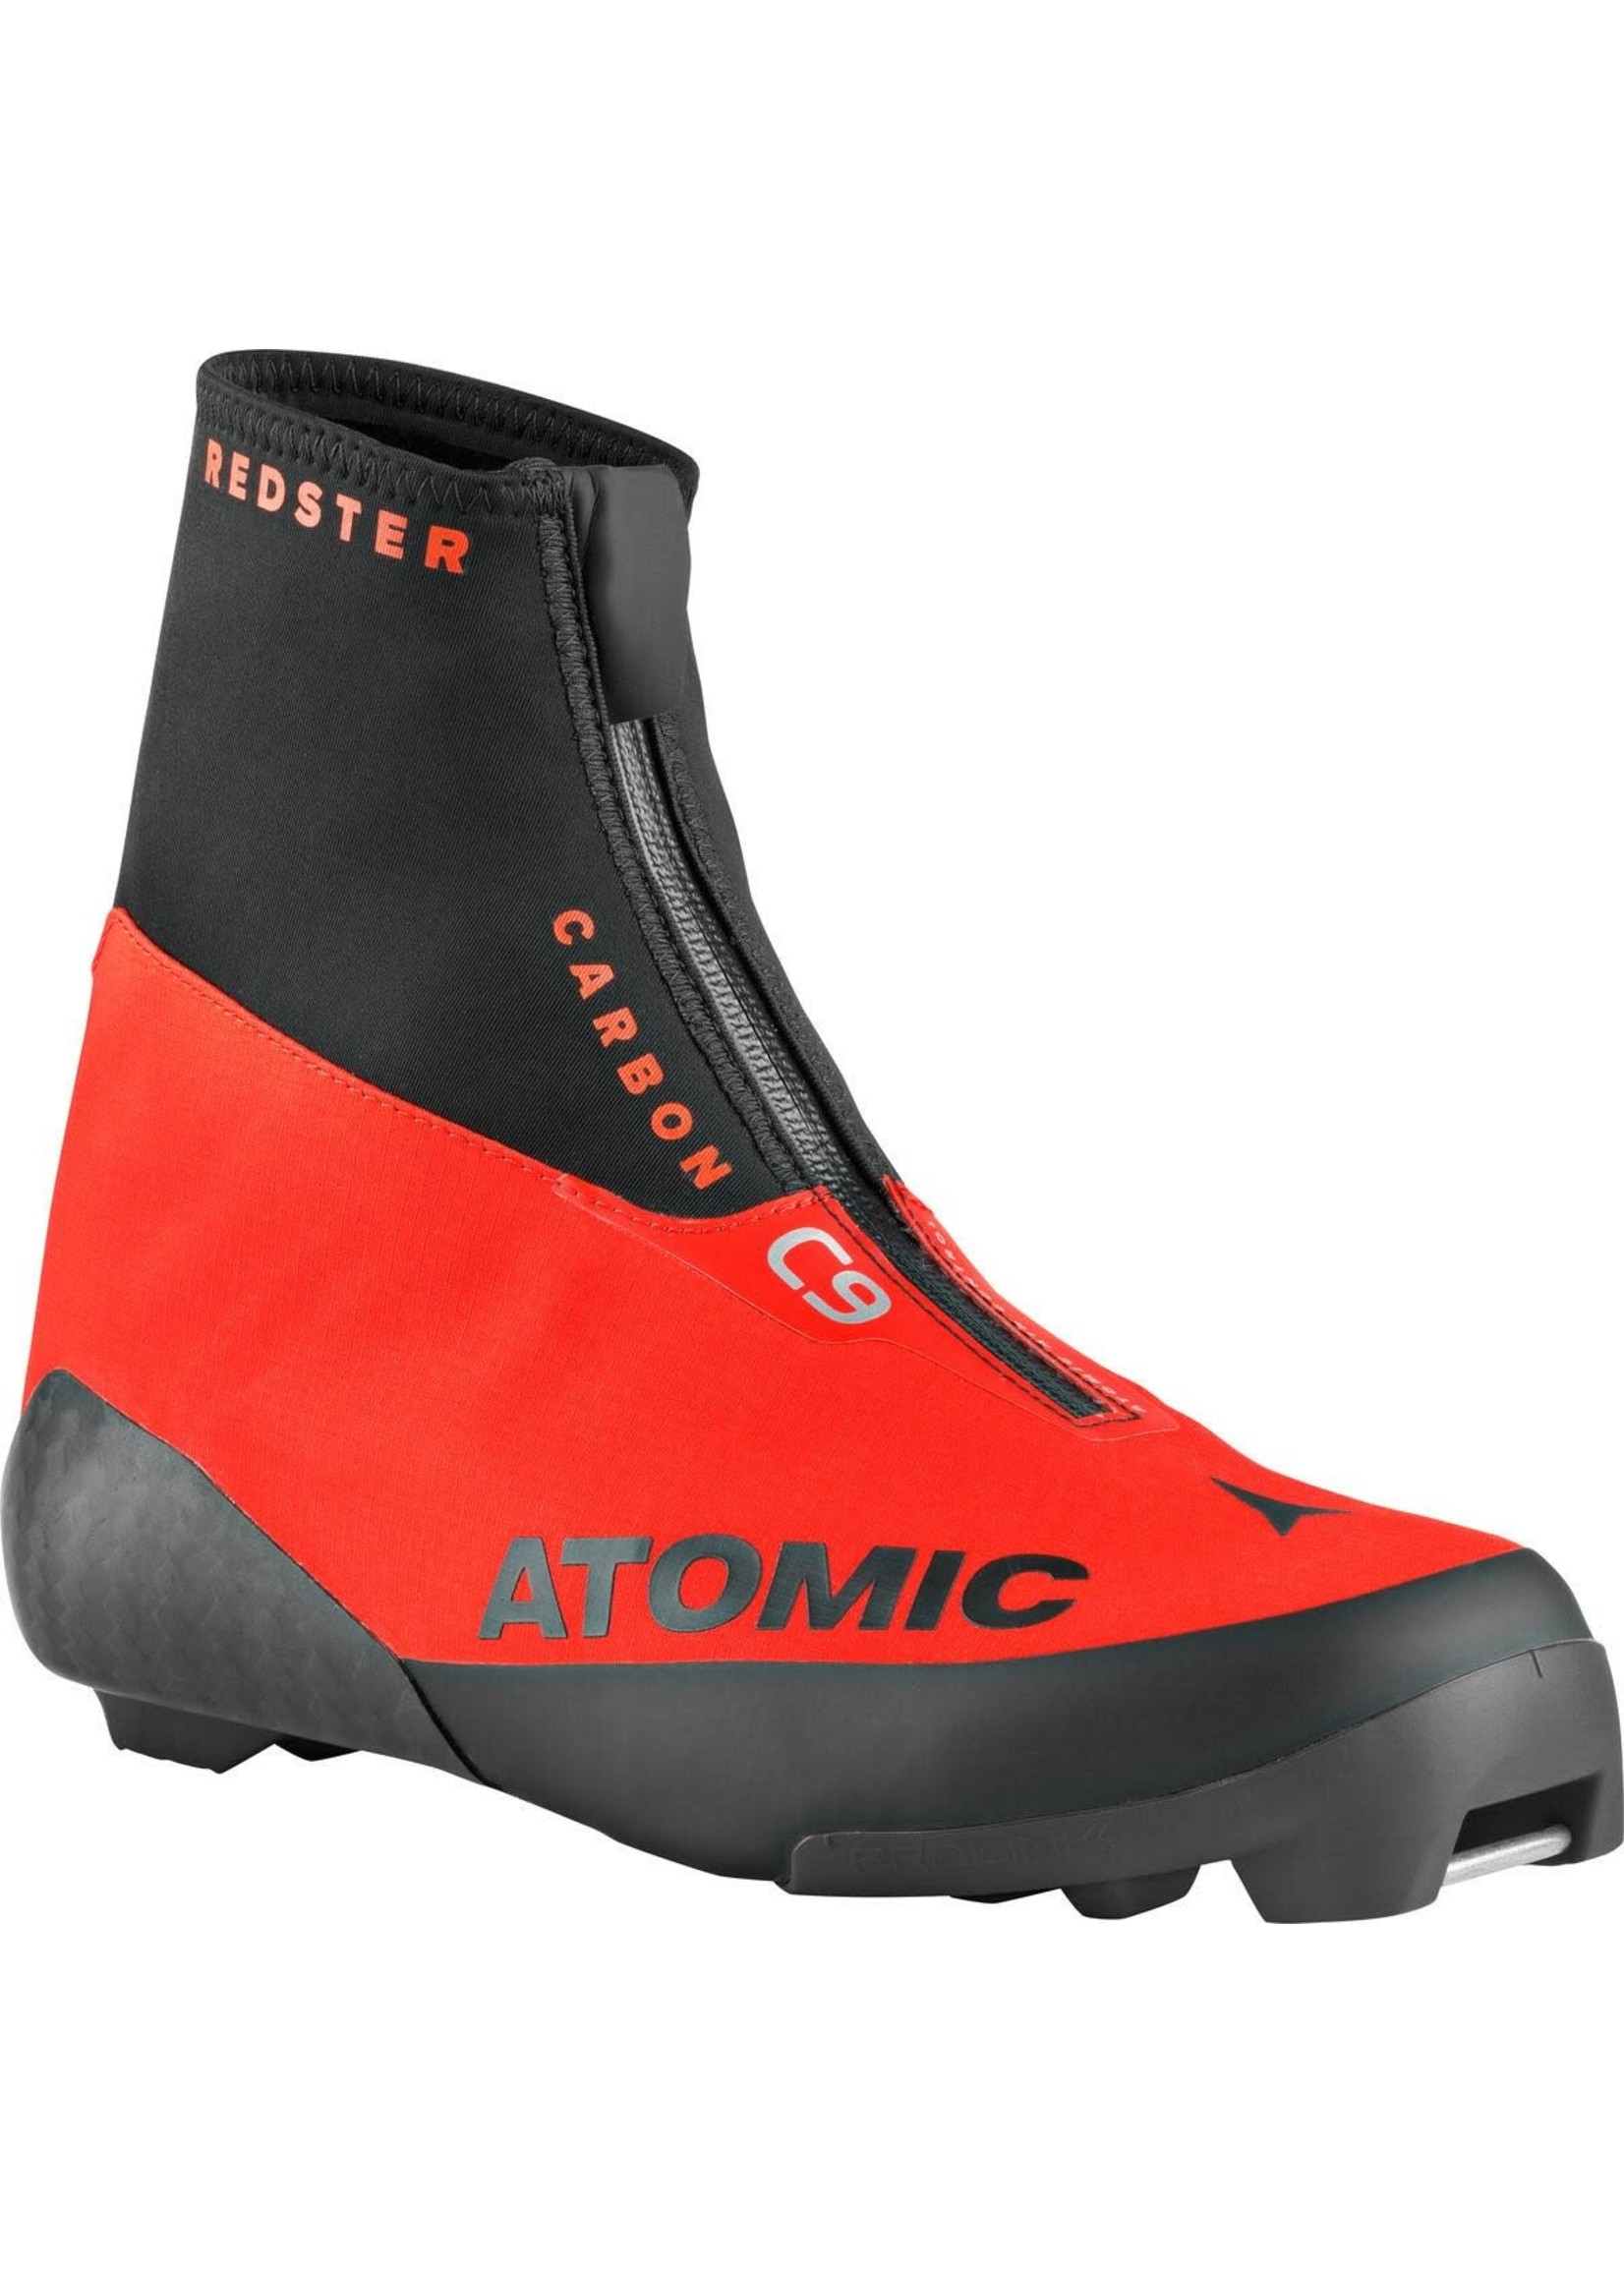 Atomic Bottes de ski de fond classique Redster C9 Carbon 2020 d'Atomic